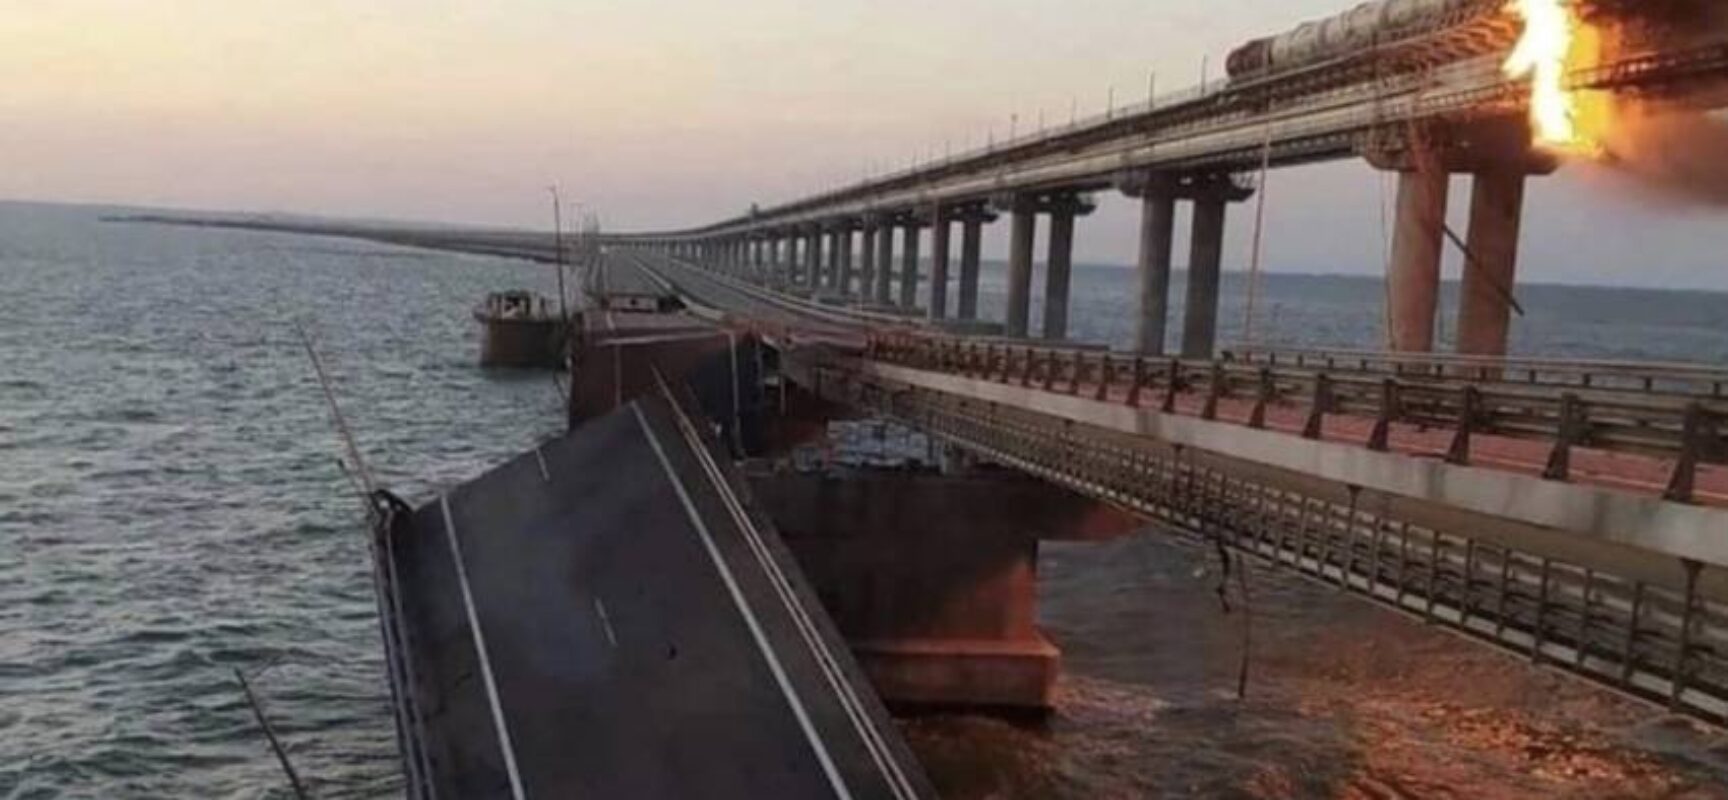 Explosões destroem parte da única ponte que liga Rússia à região da Crimeia